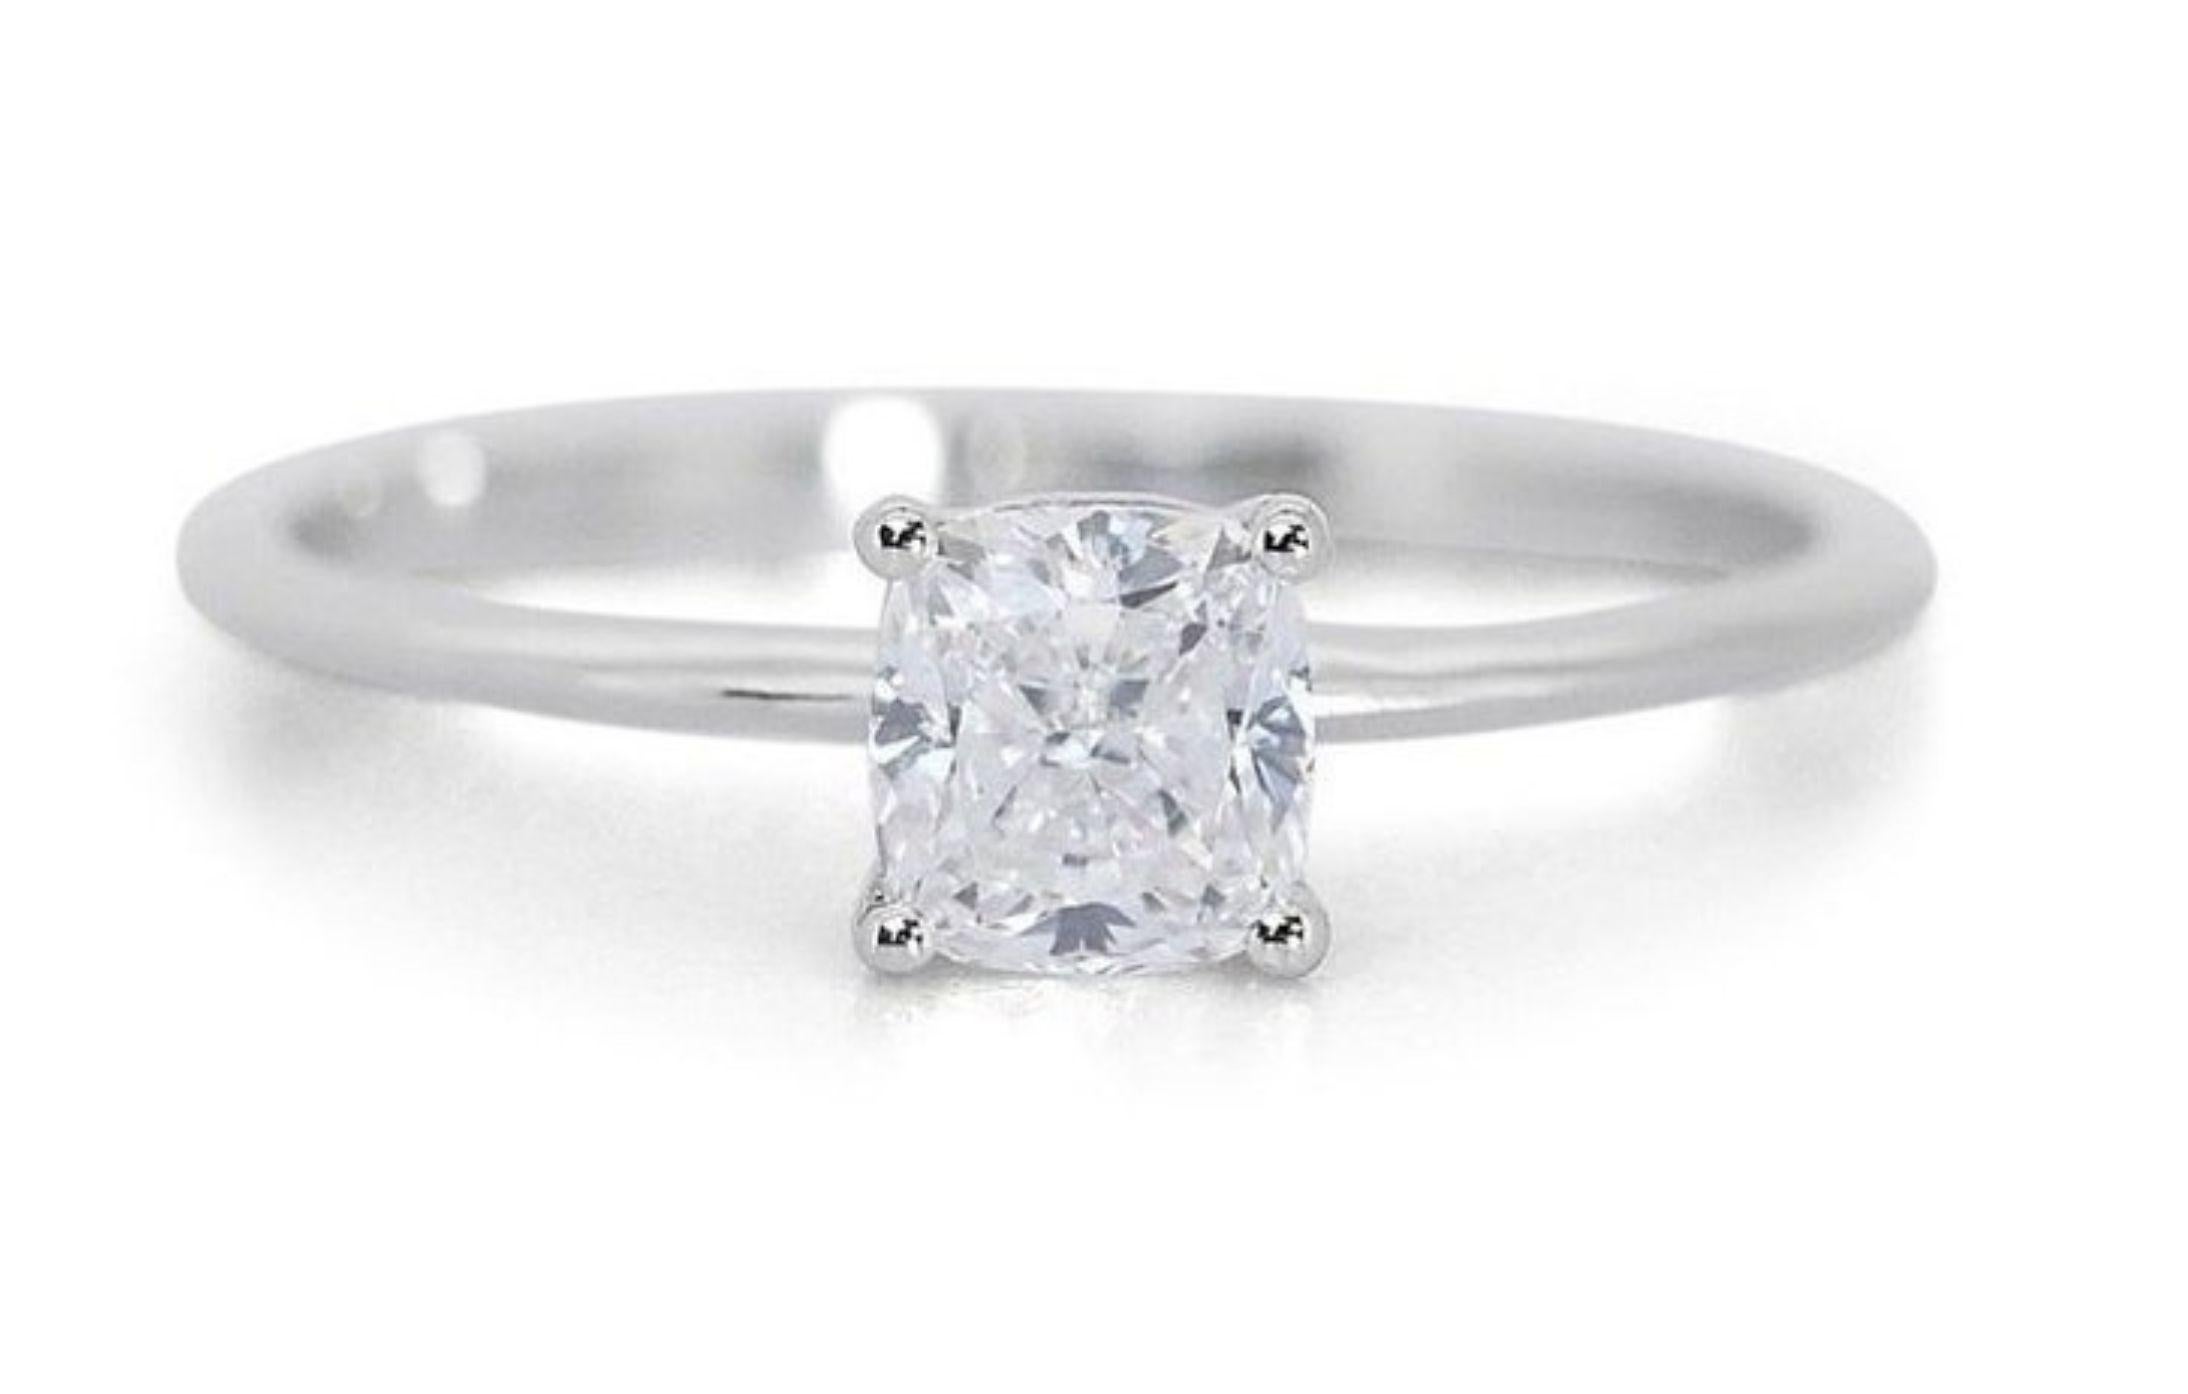 Besitzen Sie einen schillernden Traum: 1,52 Karat kissenförmiger modifizierter Diamantring aus 18 Karat Weißgold (GIA zertifiziert)

Fesseln Sie alle Blicke mit dem Glanz dieses atemberaubenden Rings mit einem kissenförmigen Diamanten von 1,52